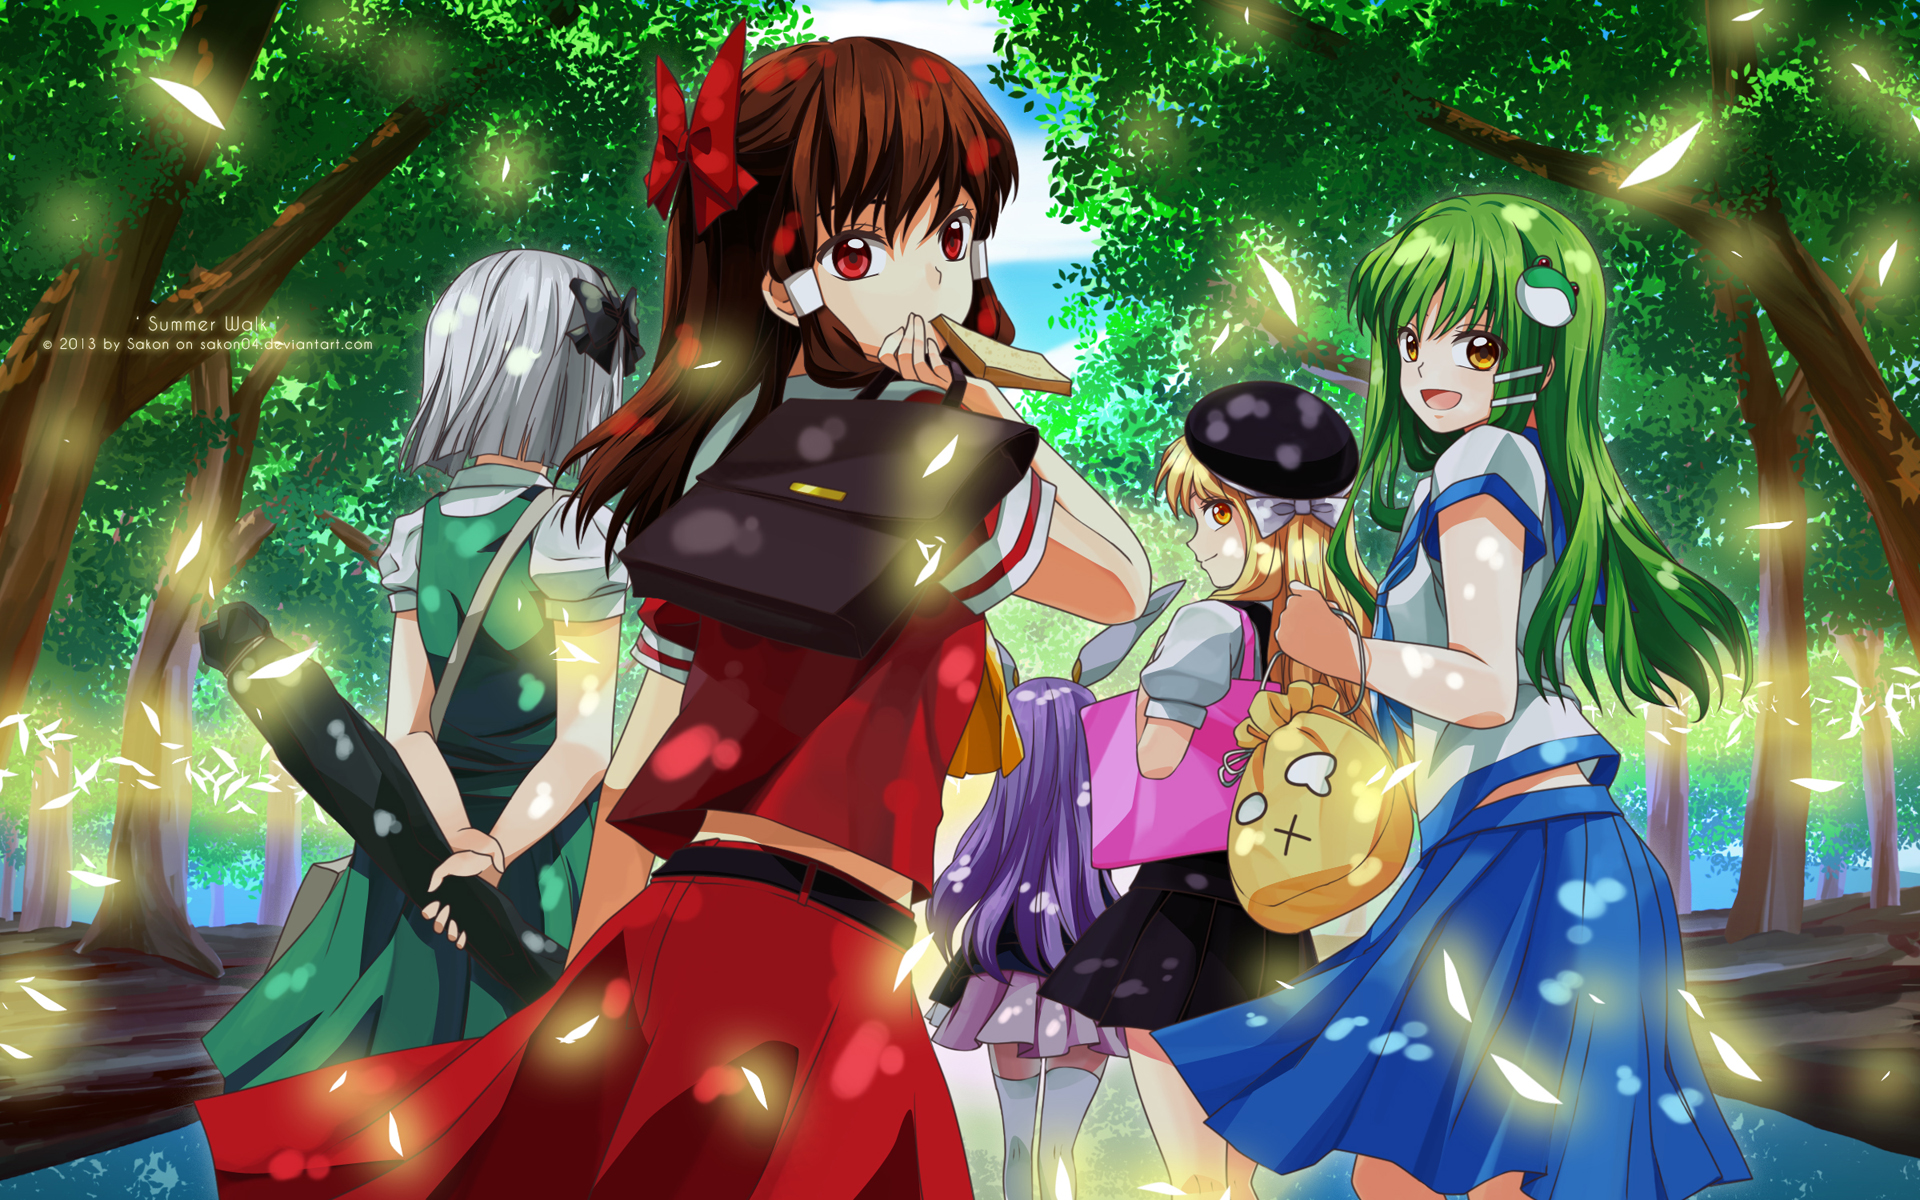 Descarga gratuita de fondo de pantalla para móvil de Animado, Touhou, Youmu Konpaku, Sanae Kochiya, Reimu Hakurei, Marisa Kirisame, Reisen Udongein Inaba.